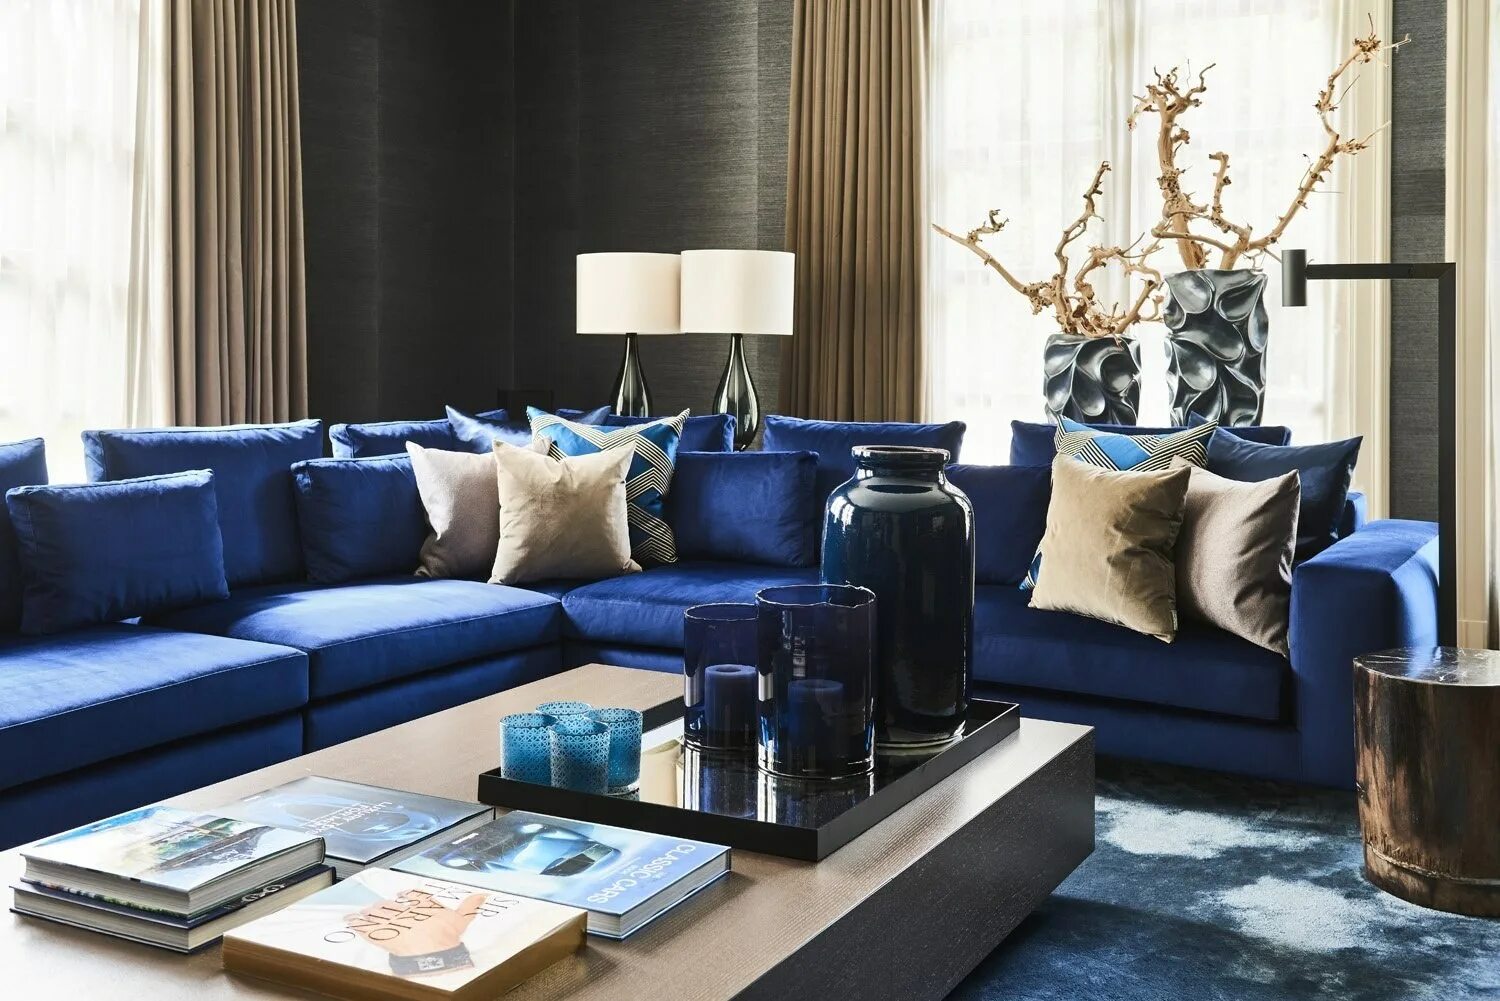 Синий диван. Синяя гостиная. Синий диван в интерьере. Синий диван в интерьере гостиной. Гостиная с синим диваном.